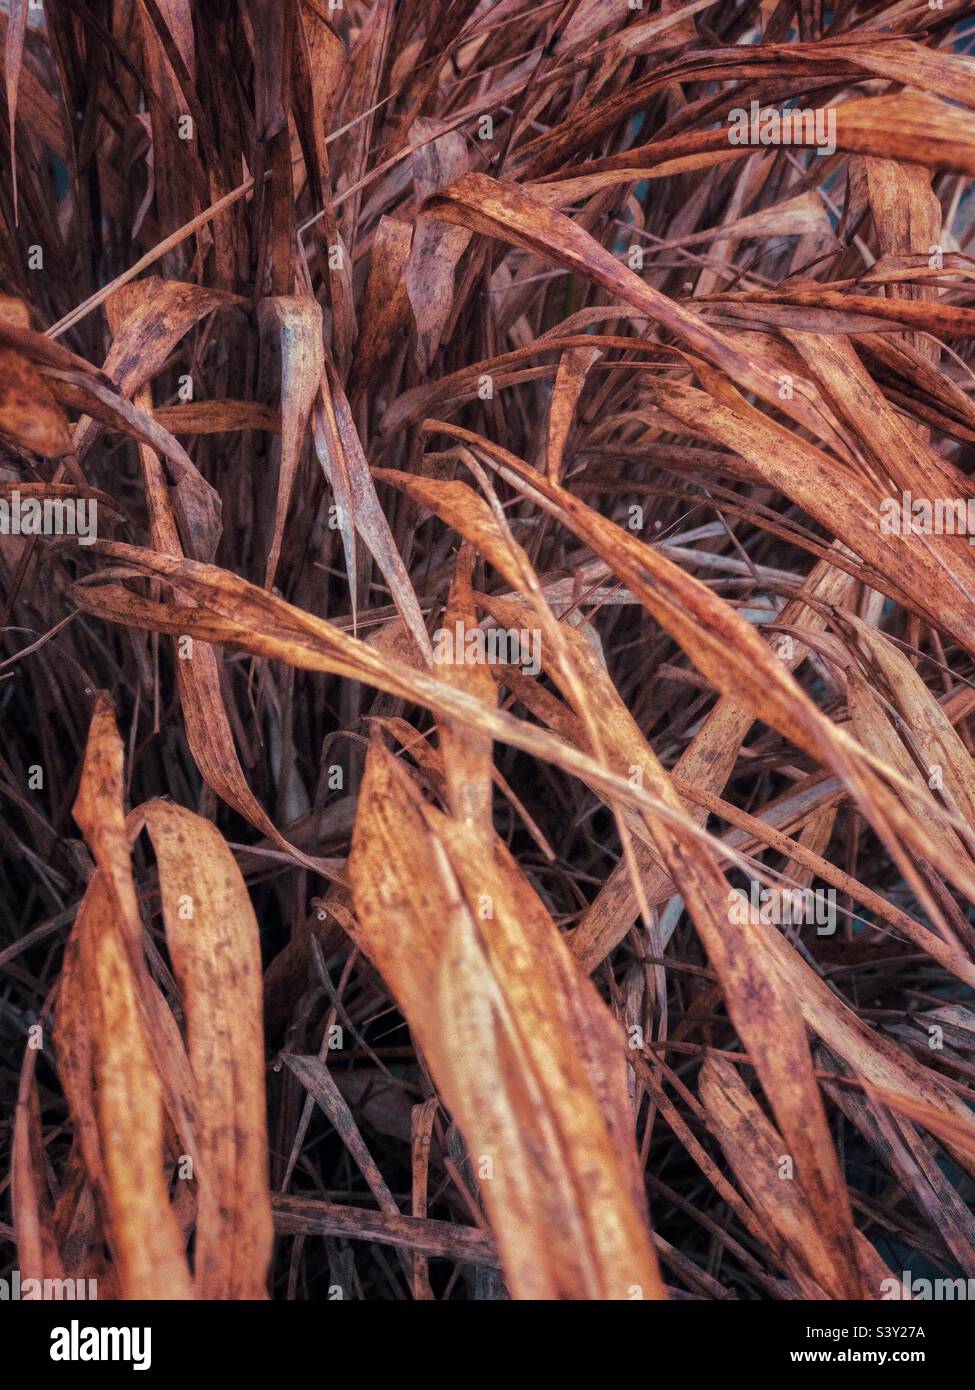 Ornamental grass in autumn. Stock Photo